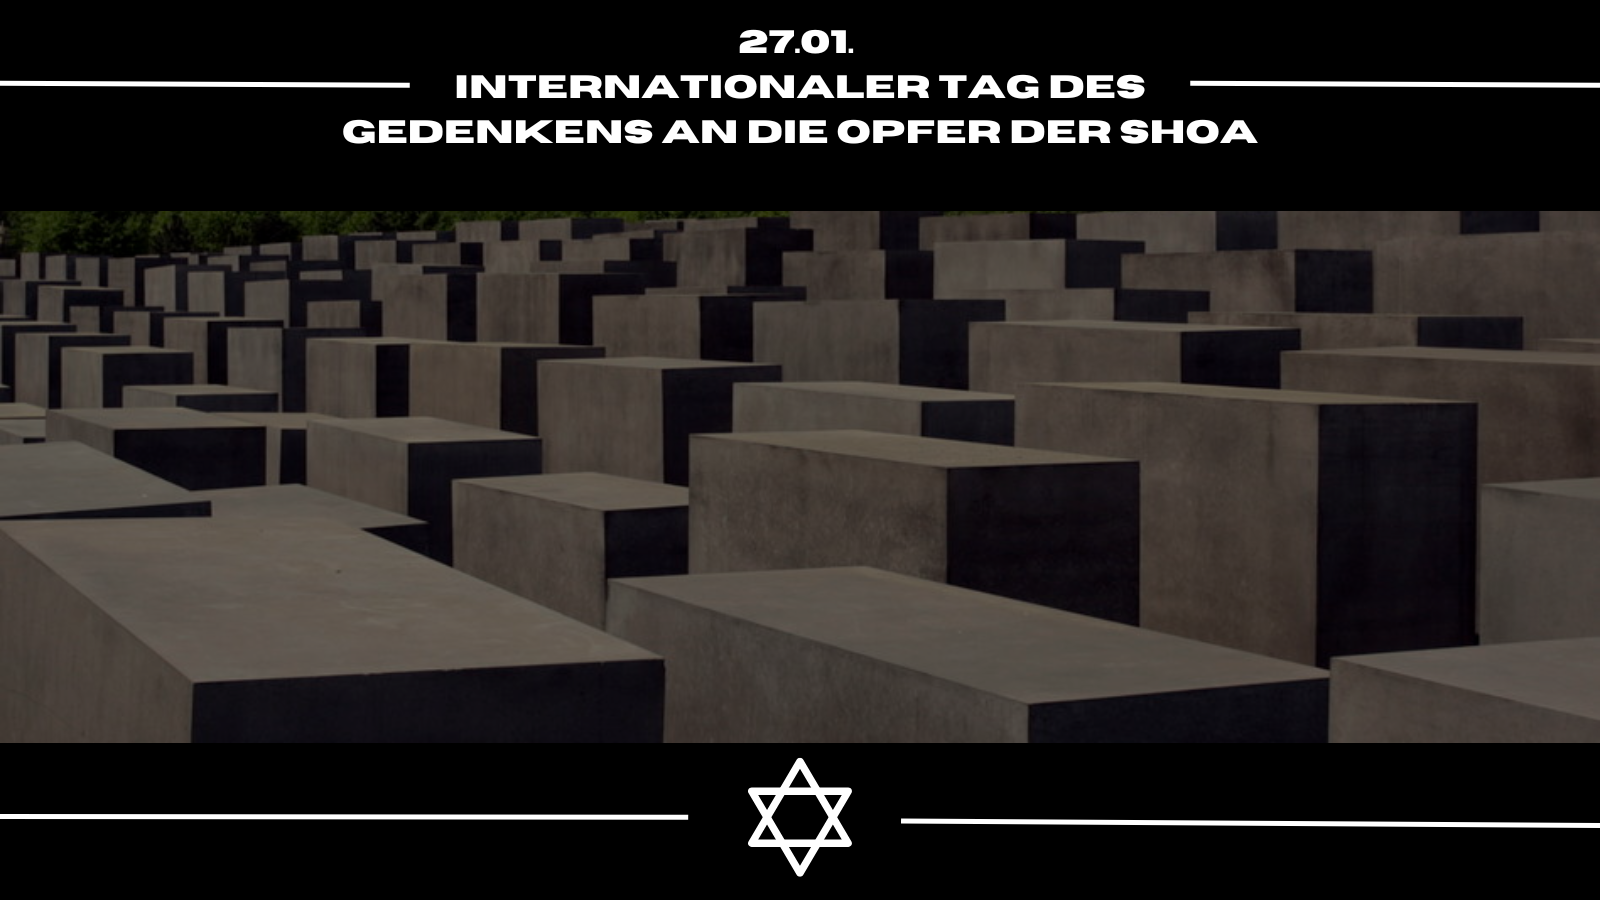 Internationaler Tag des Gedenkens an die Opfer der Shoa